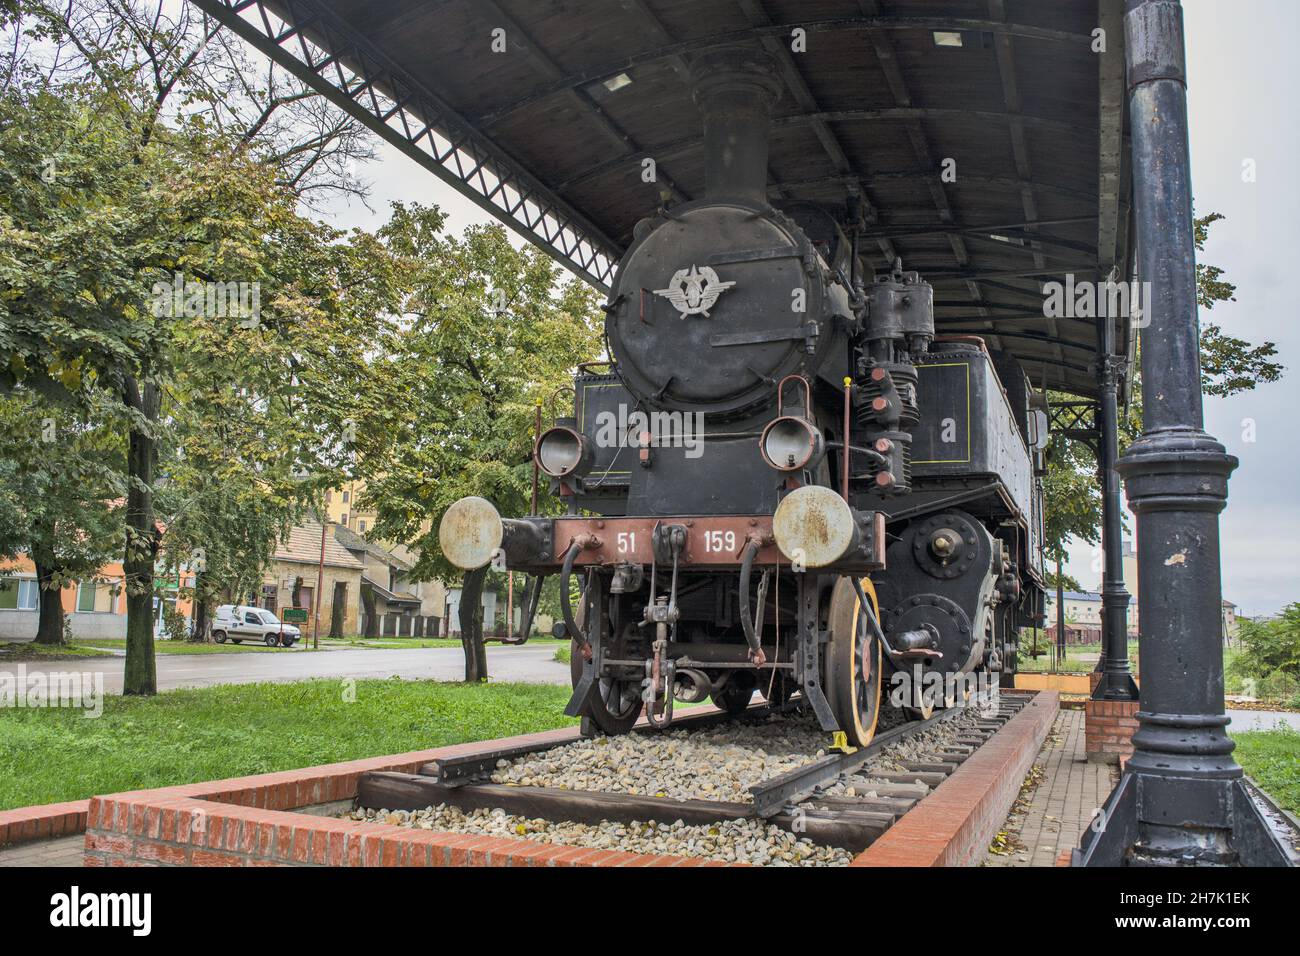 KIKINDA, SERBIE - 17 octobre 2015 : l'ancienne série de locomotives à vapeur 51 - 159 fabriquée en Hongrie vers 1910.Kikinda, Serbie. Banque D'Images